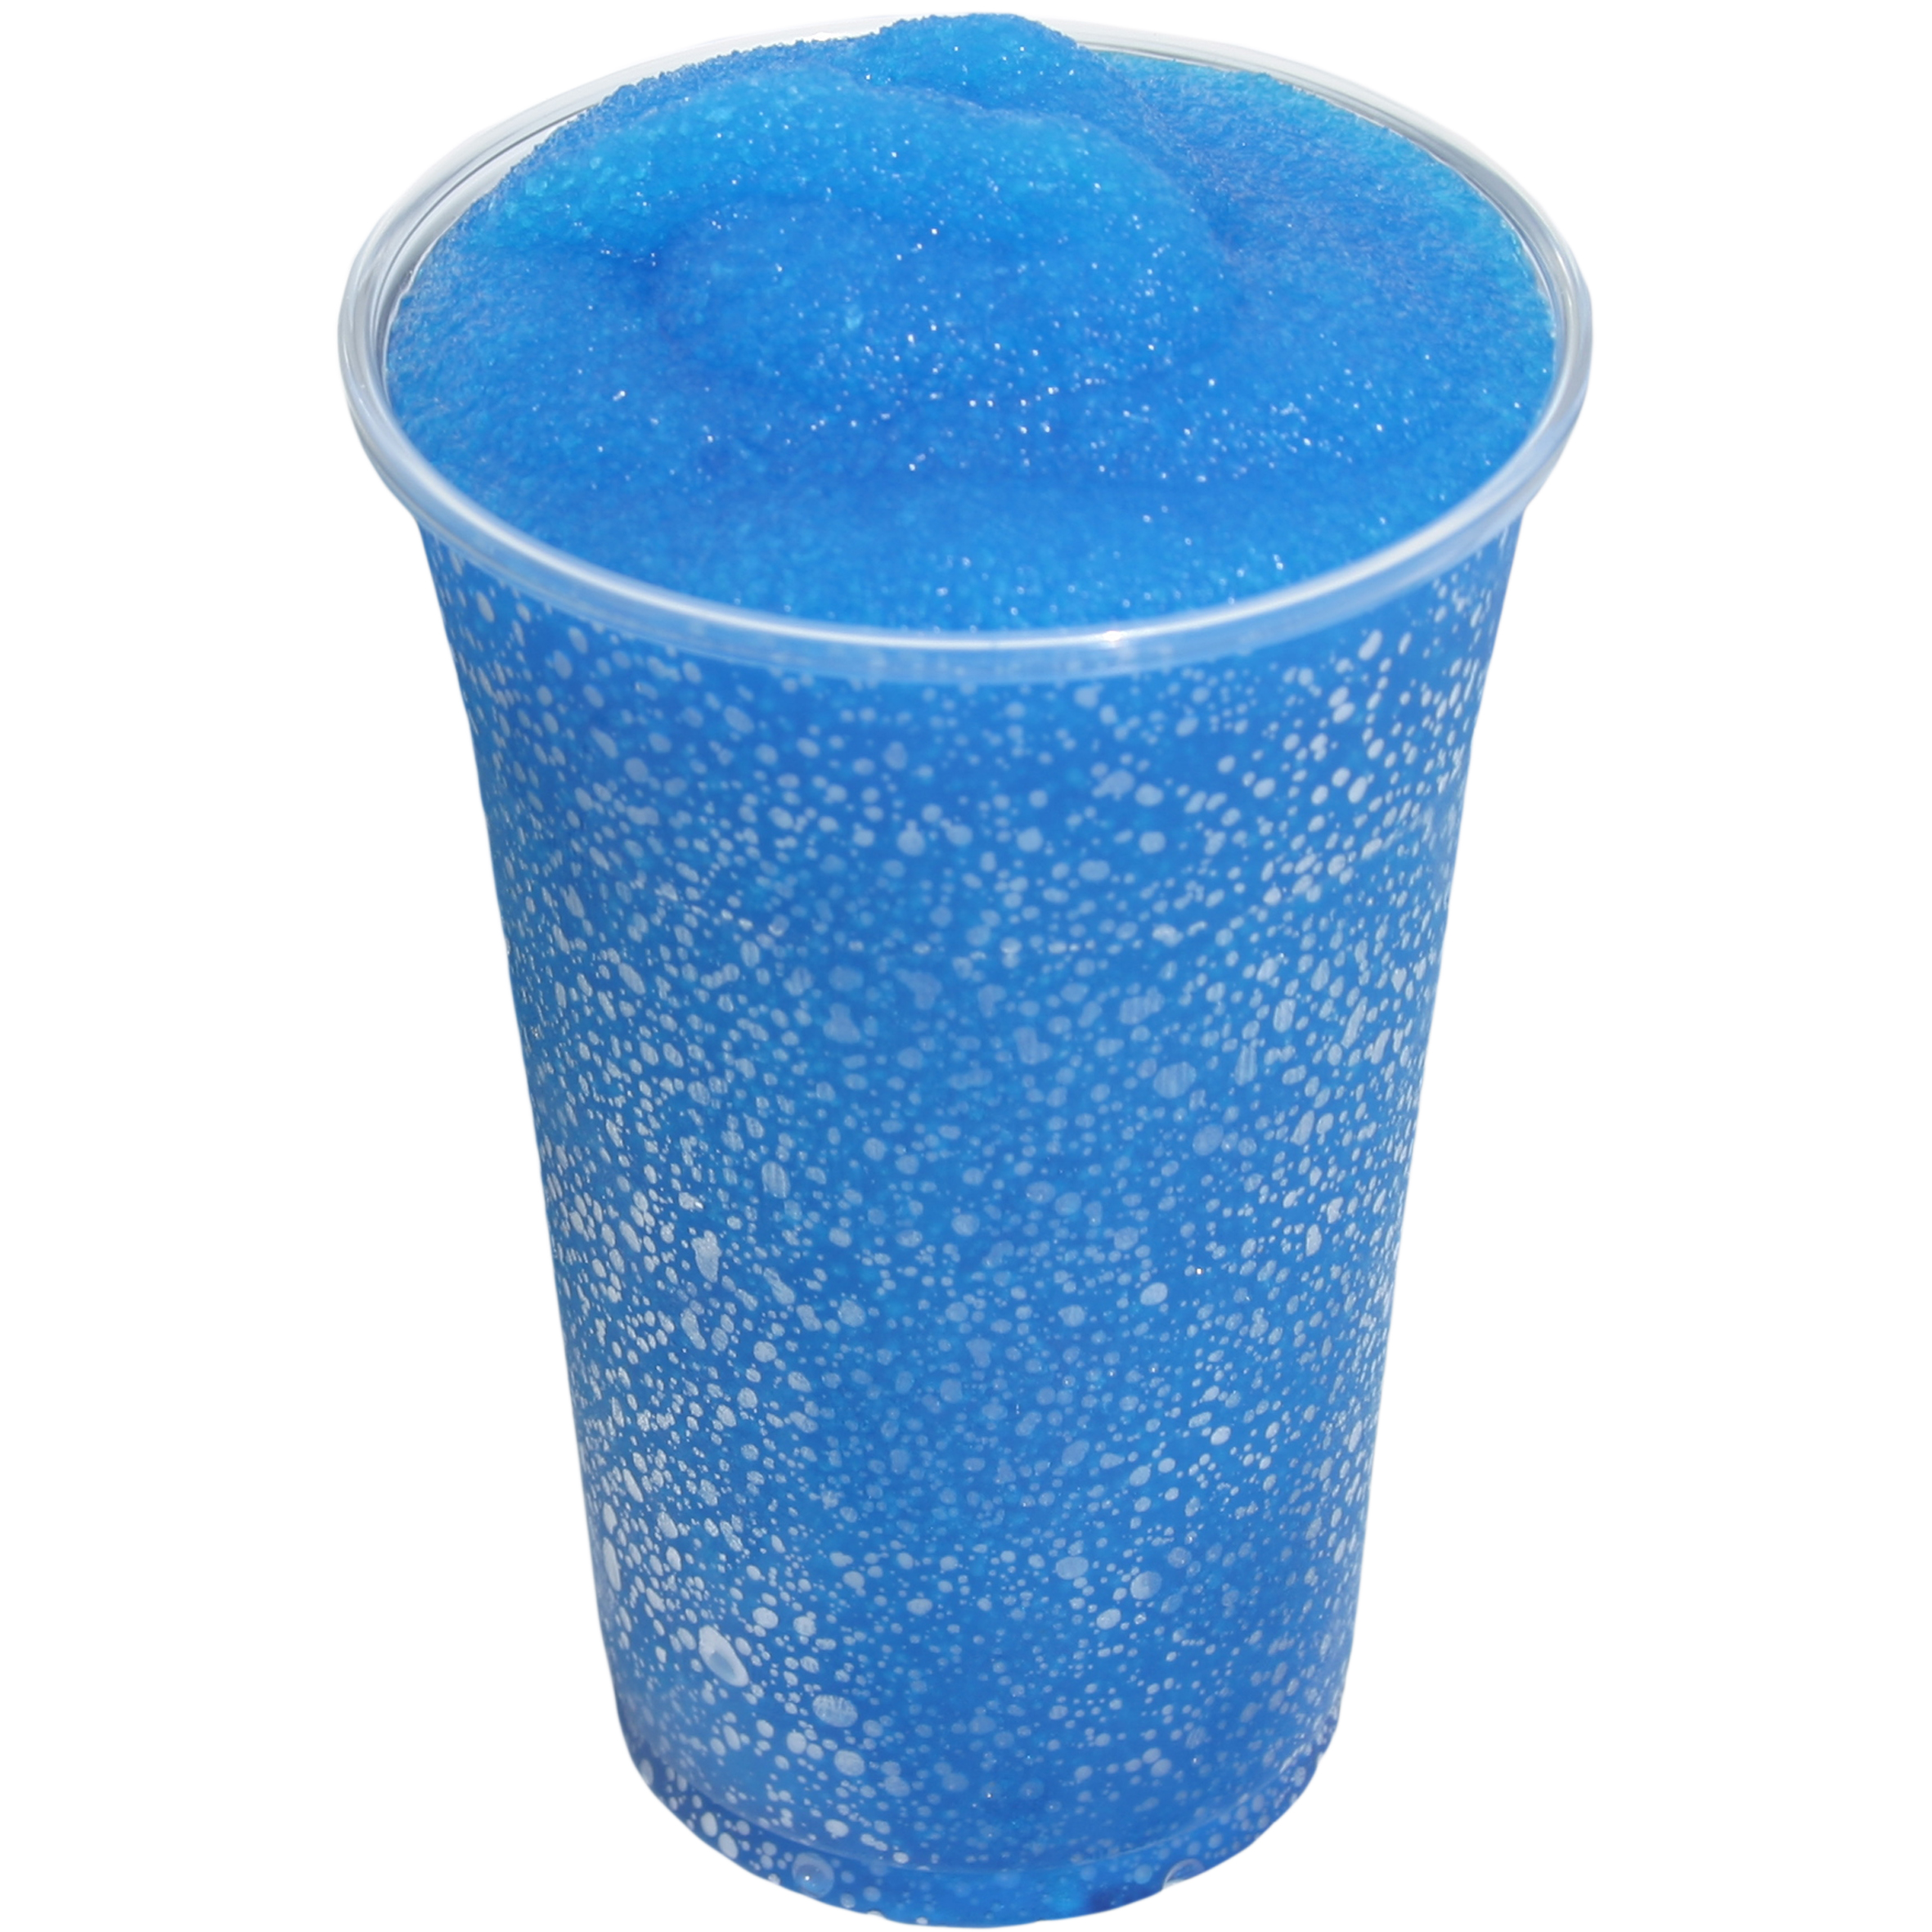 Slush Eis Sirup Blaubeere